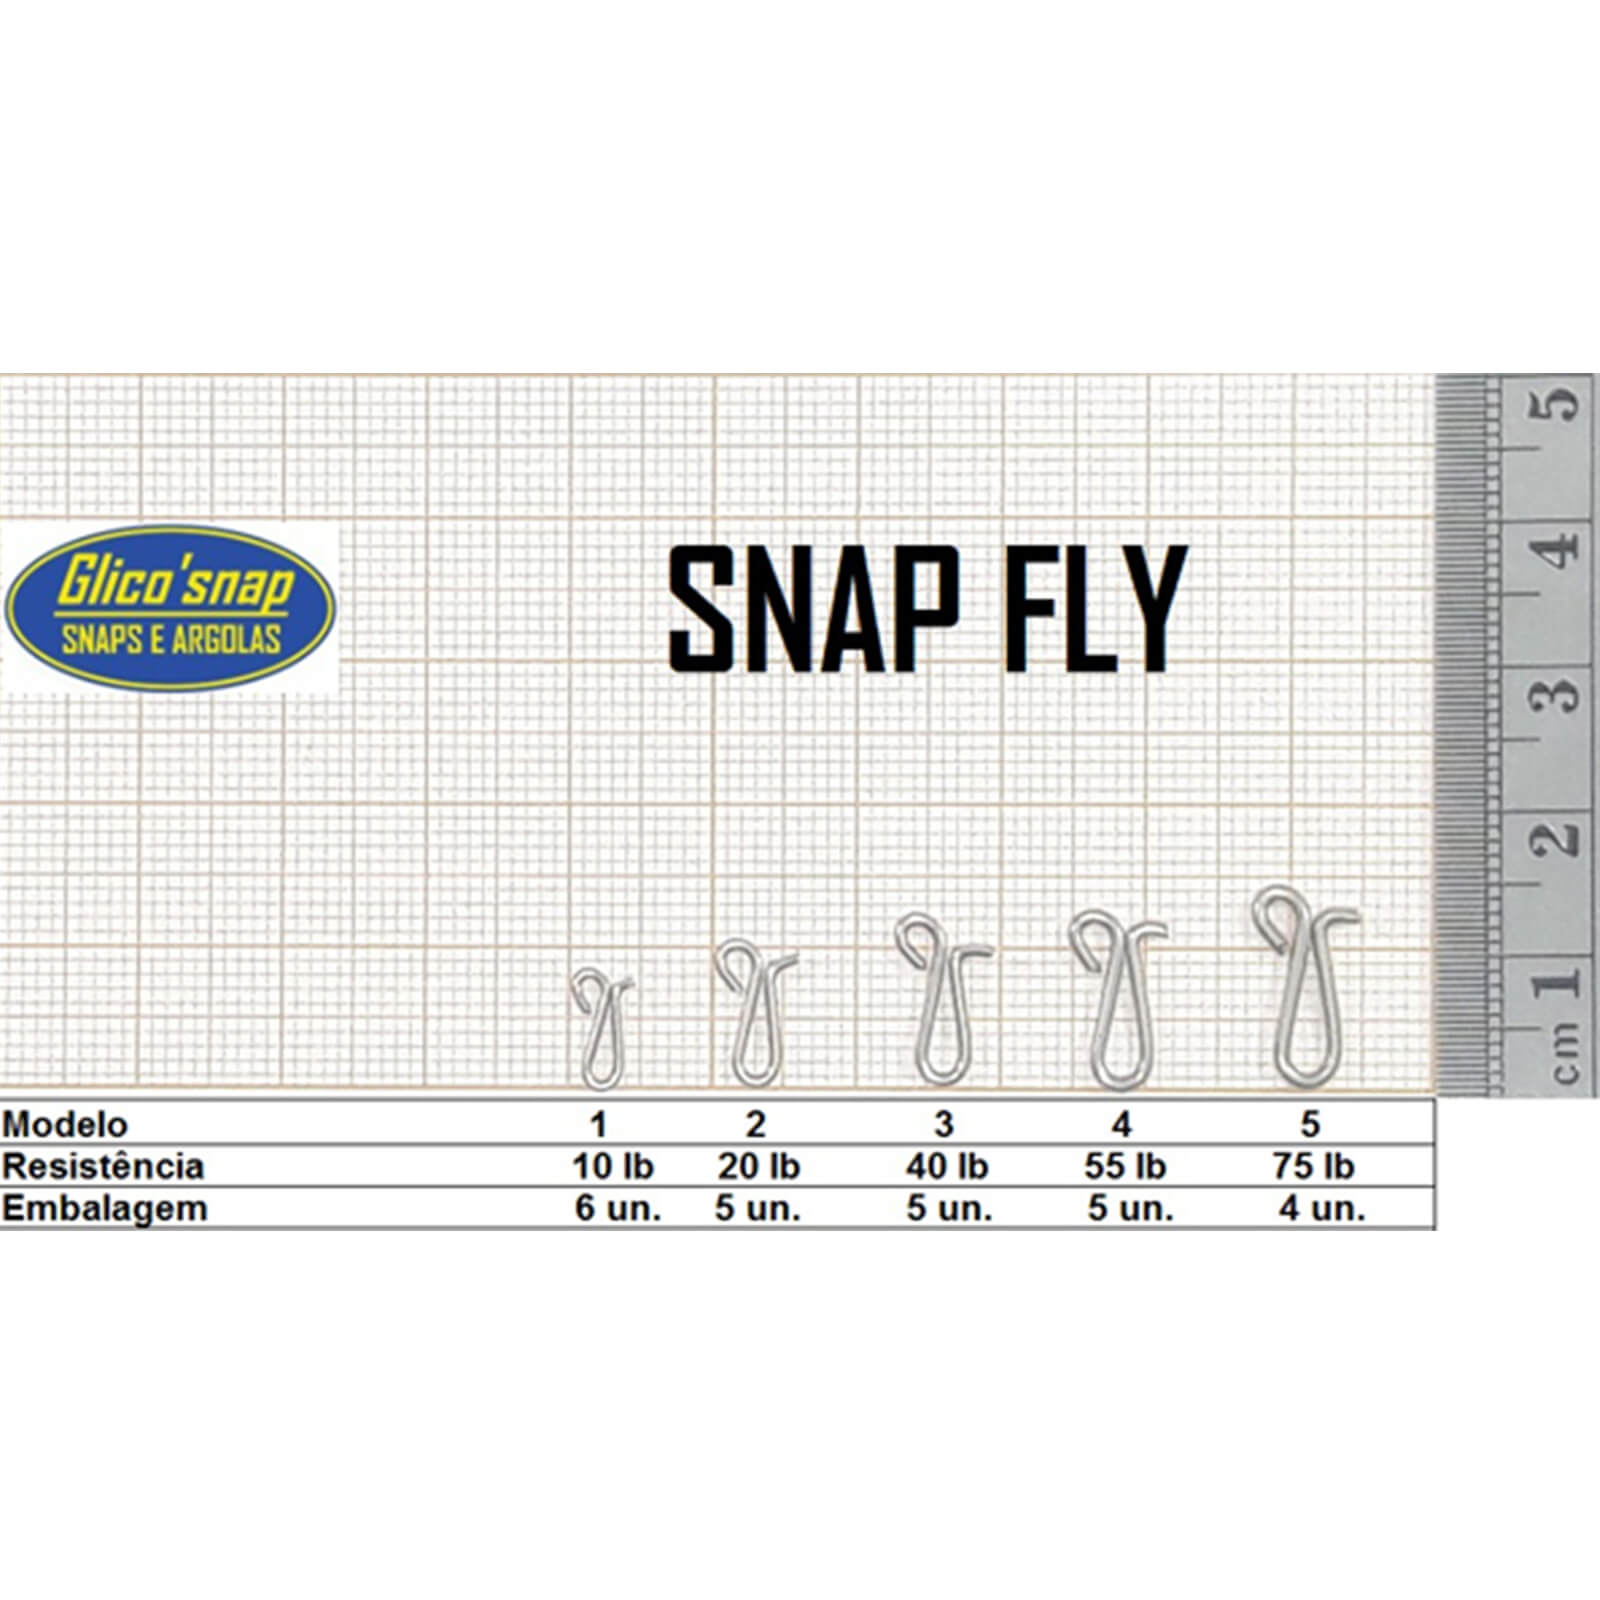 Snap Fly Mod 3 40lb 5un Glico' Snap